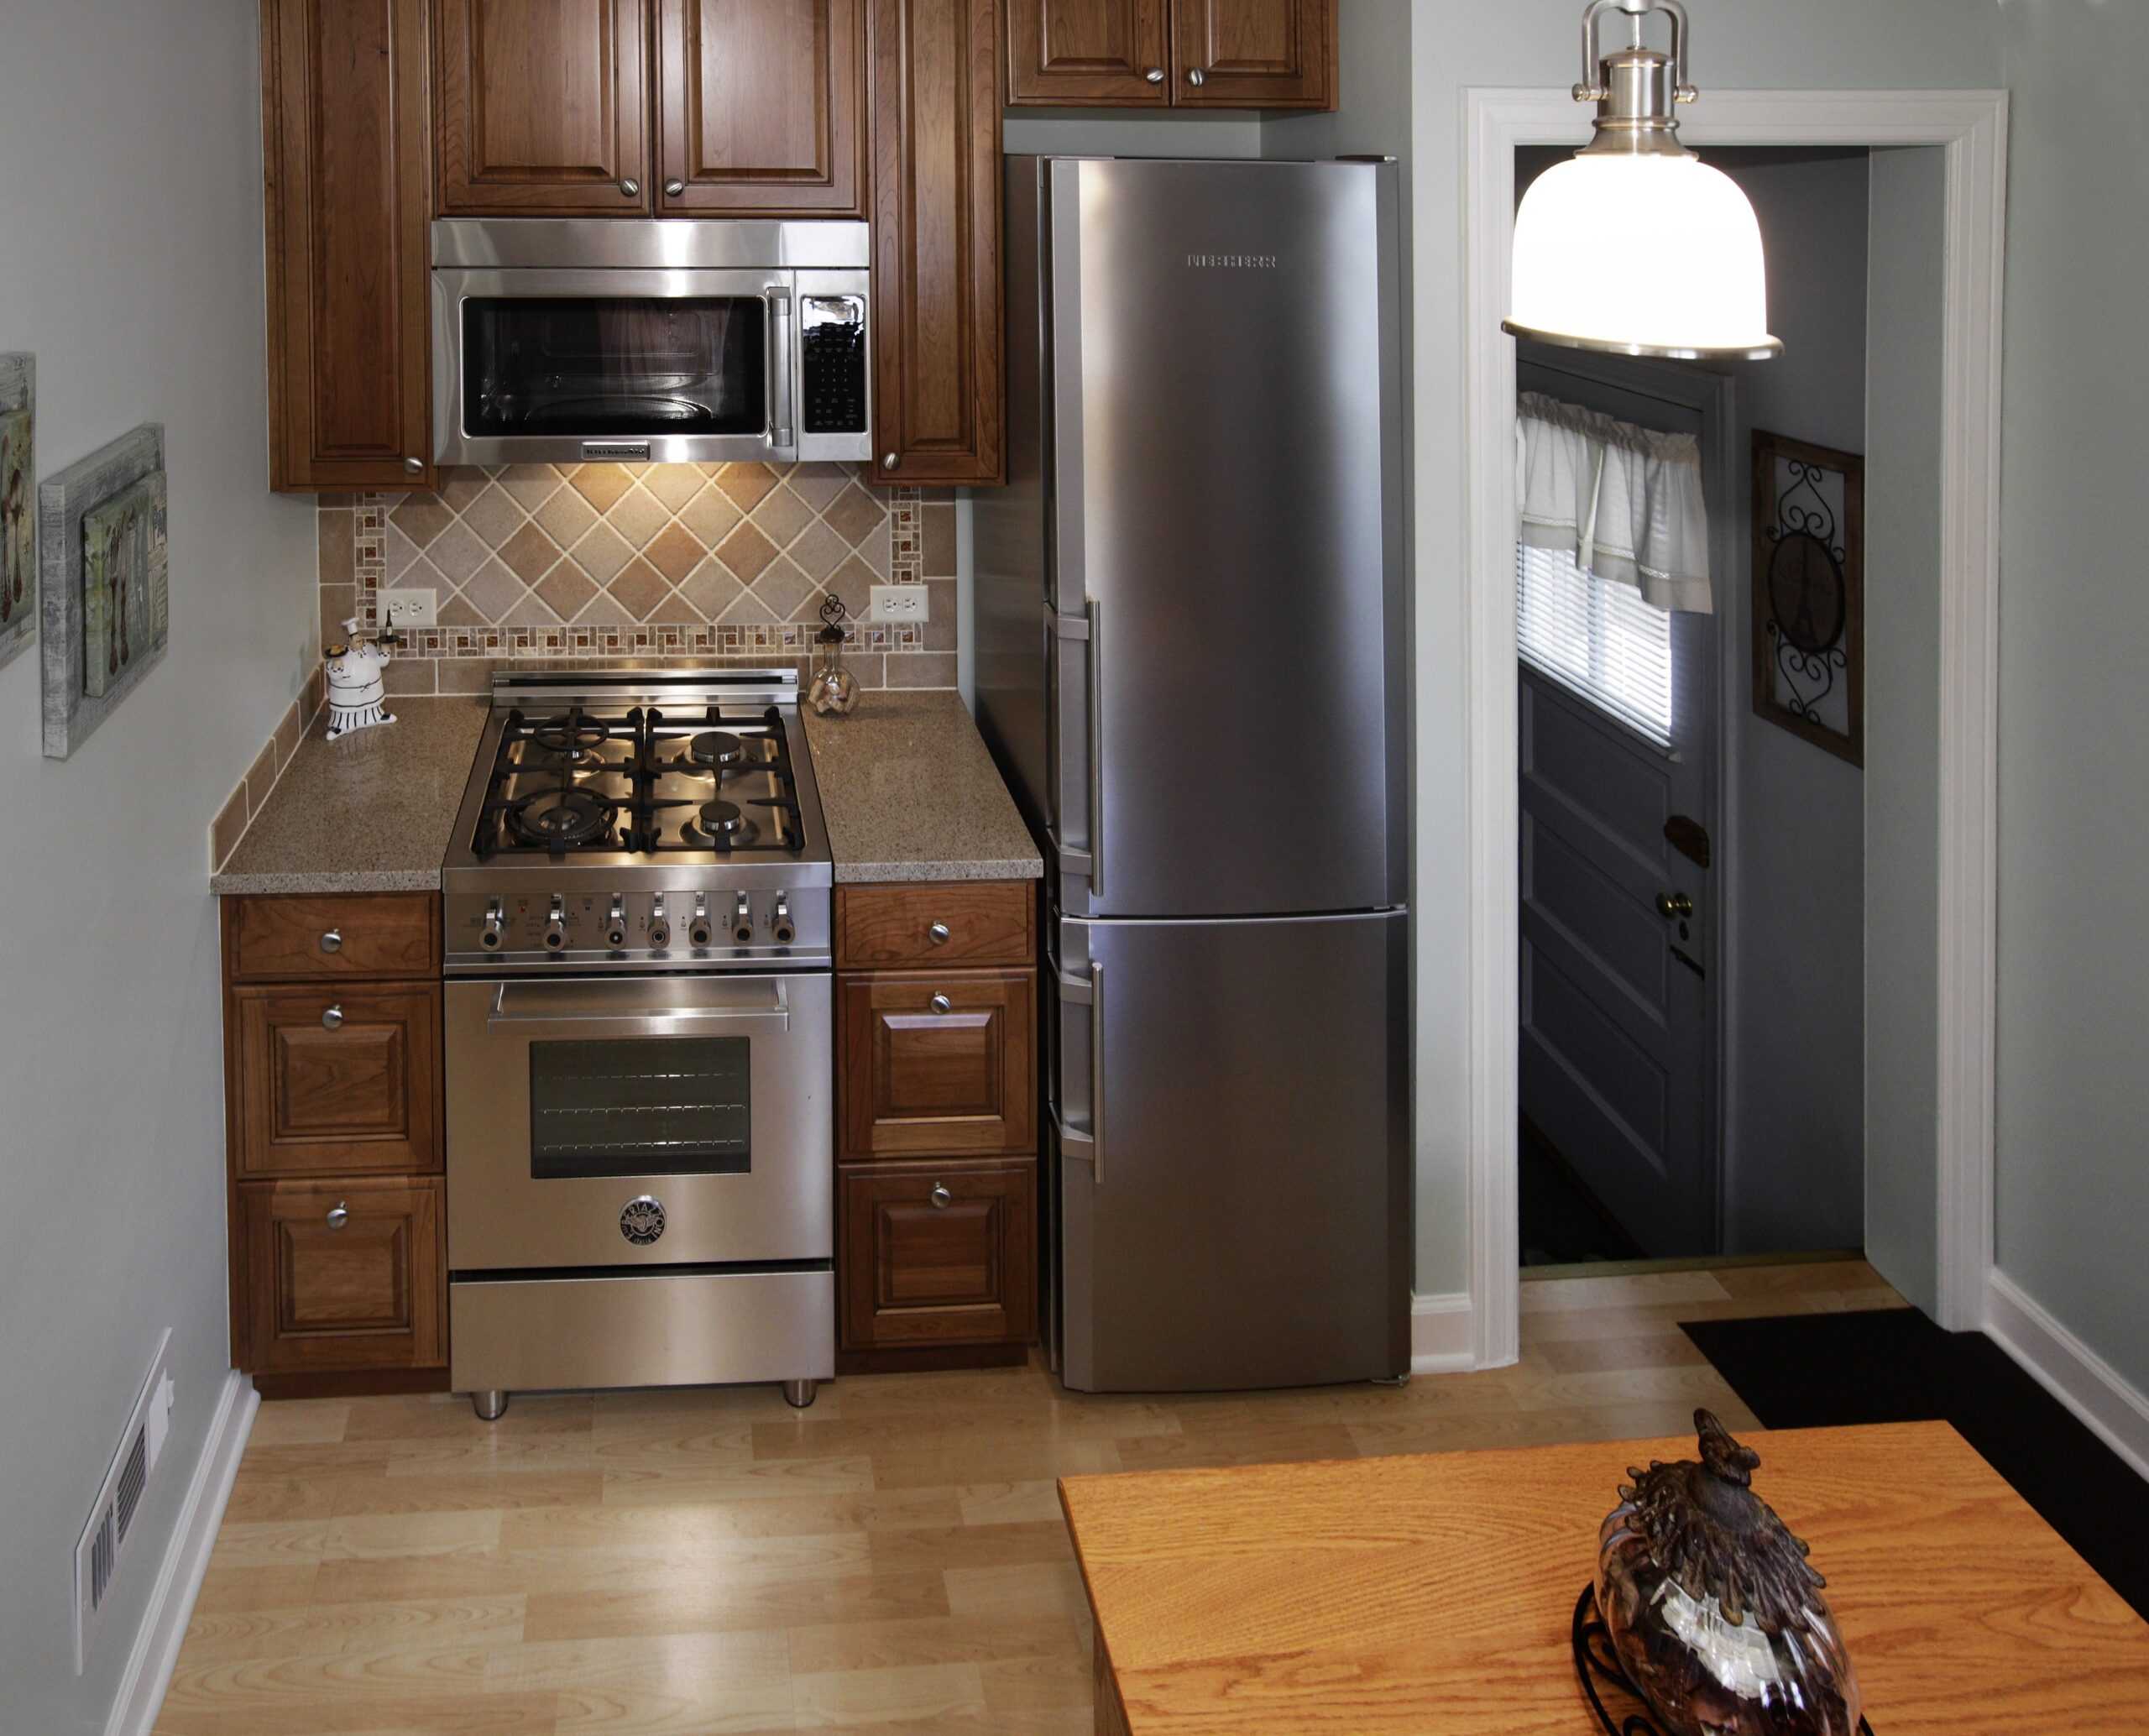 Холодильник рядом с плитой или другими «теплыми» объектами – это нормально?